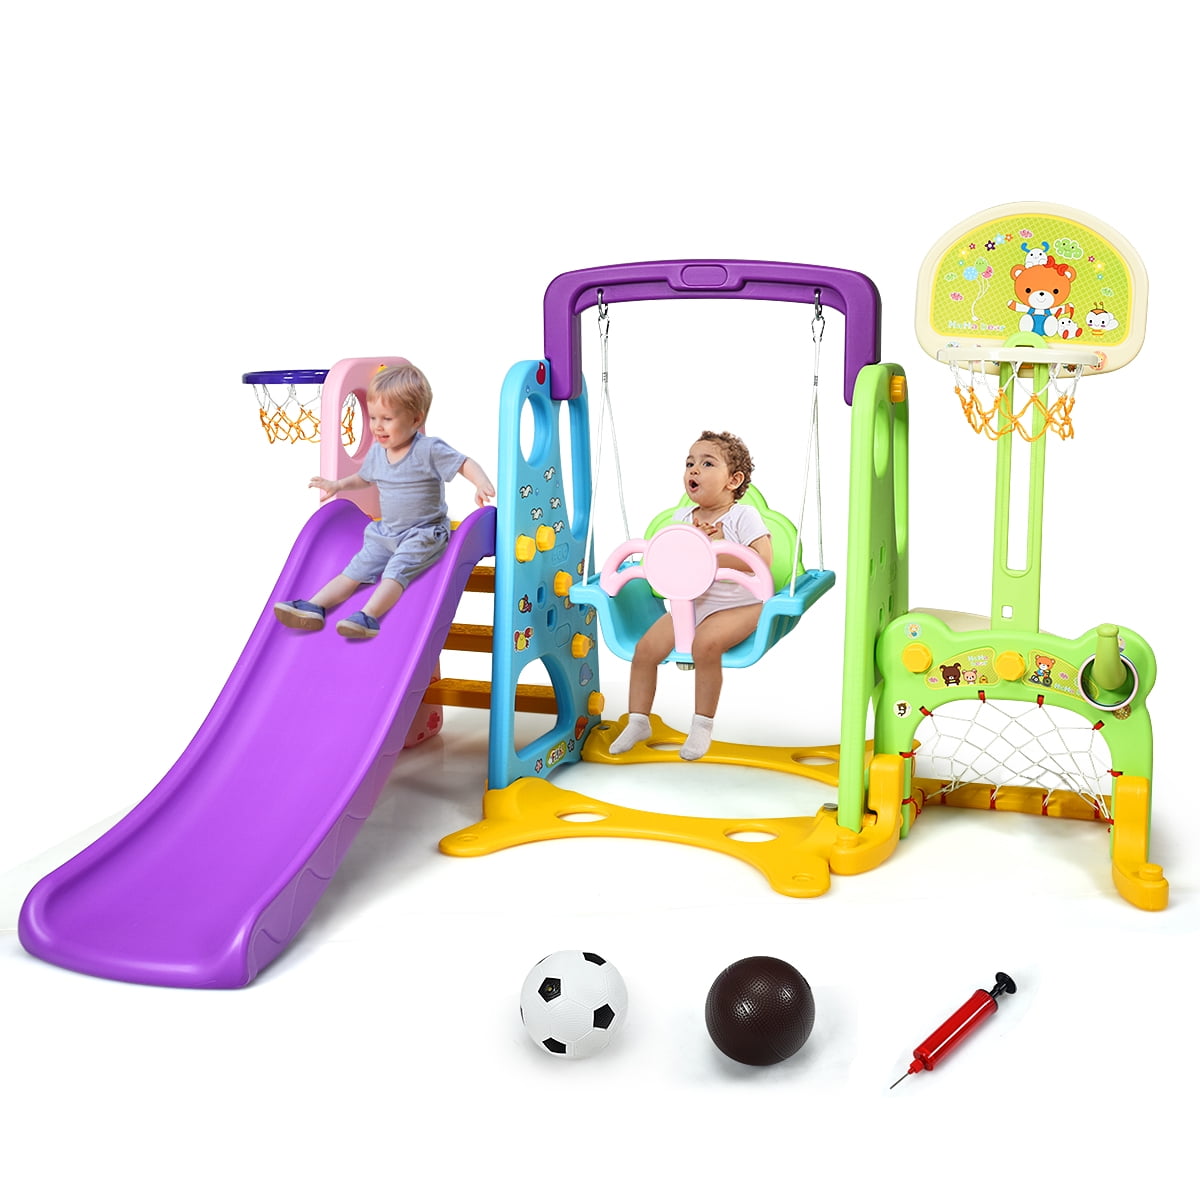 Swing Set For Backyard Playground Slide Fun Playset Outdoor Toddler Kid L 